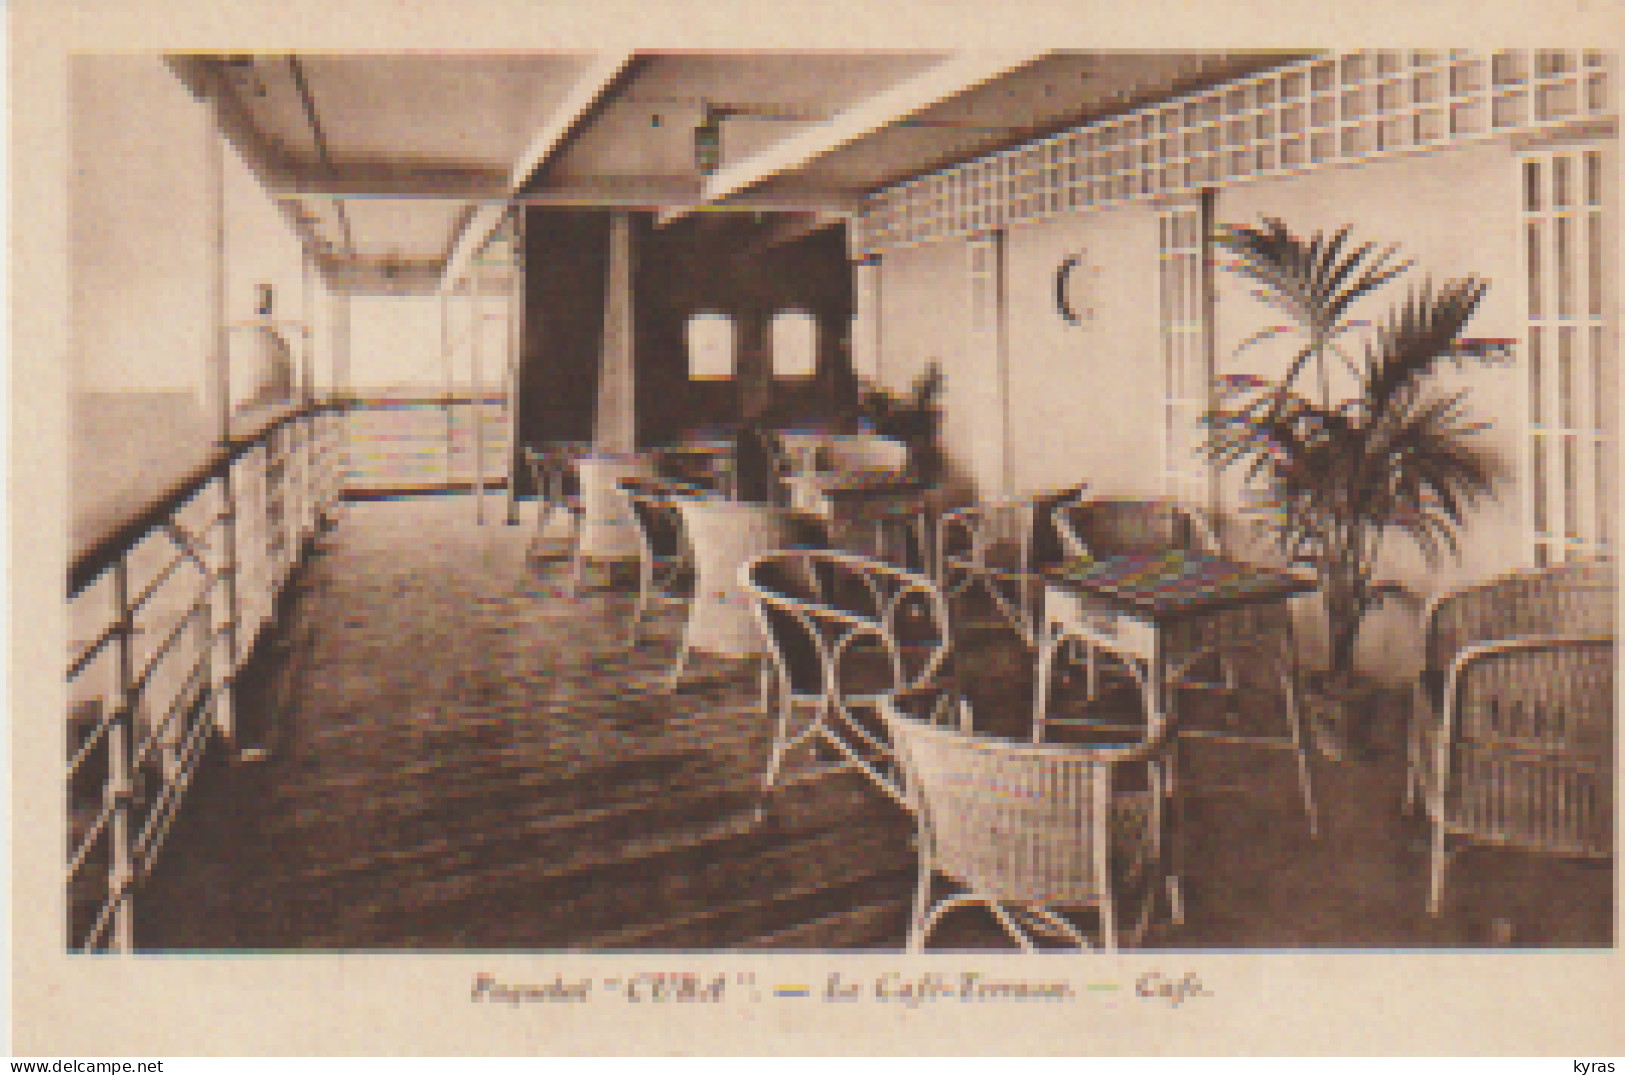 3 Cpa Paquebot " CUBA": 1/ Le Café-terrasse  2/ Fumoir 1ère Classe 3/ Salle à Manger 1ère Classe - Paquebots